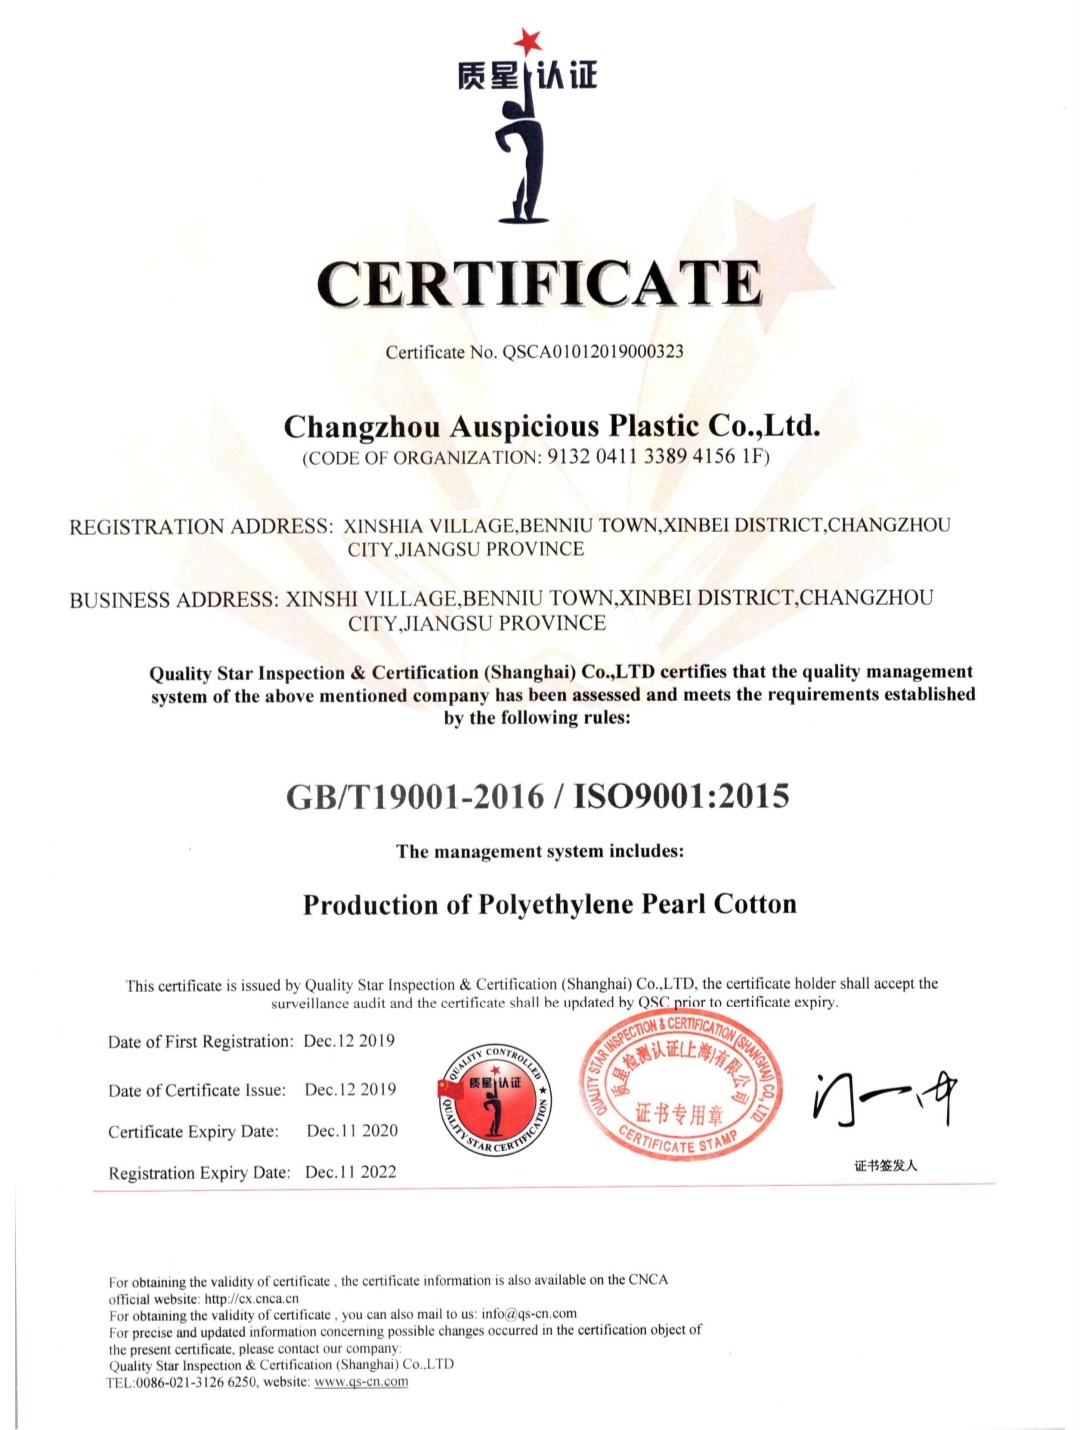 중국 Changzhou Auspicious Plastic Co., Ltd. 인증